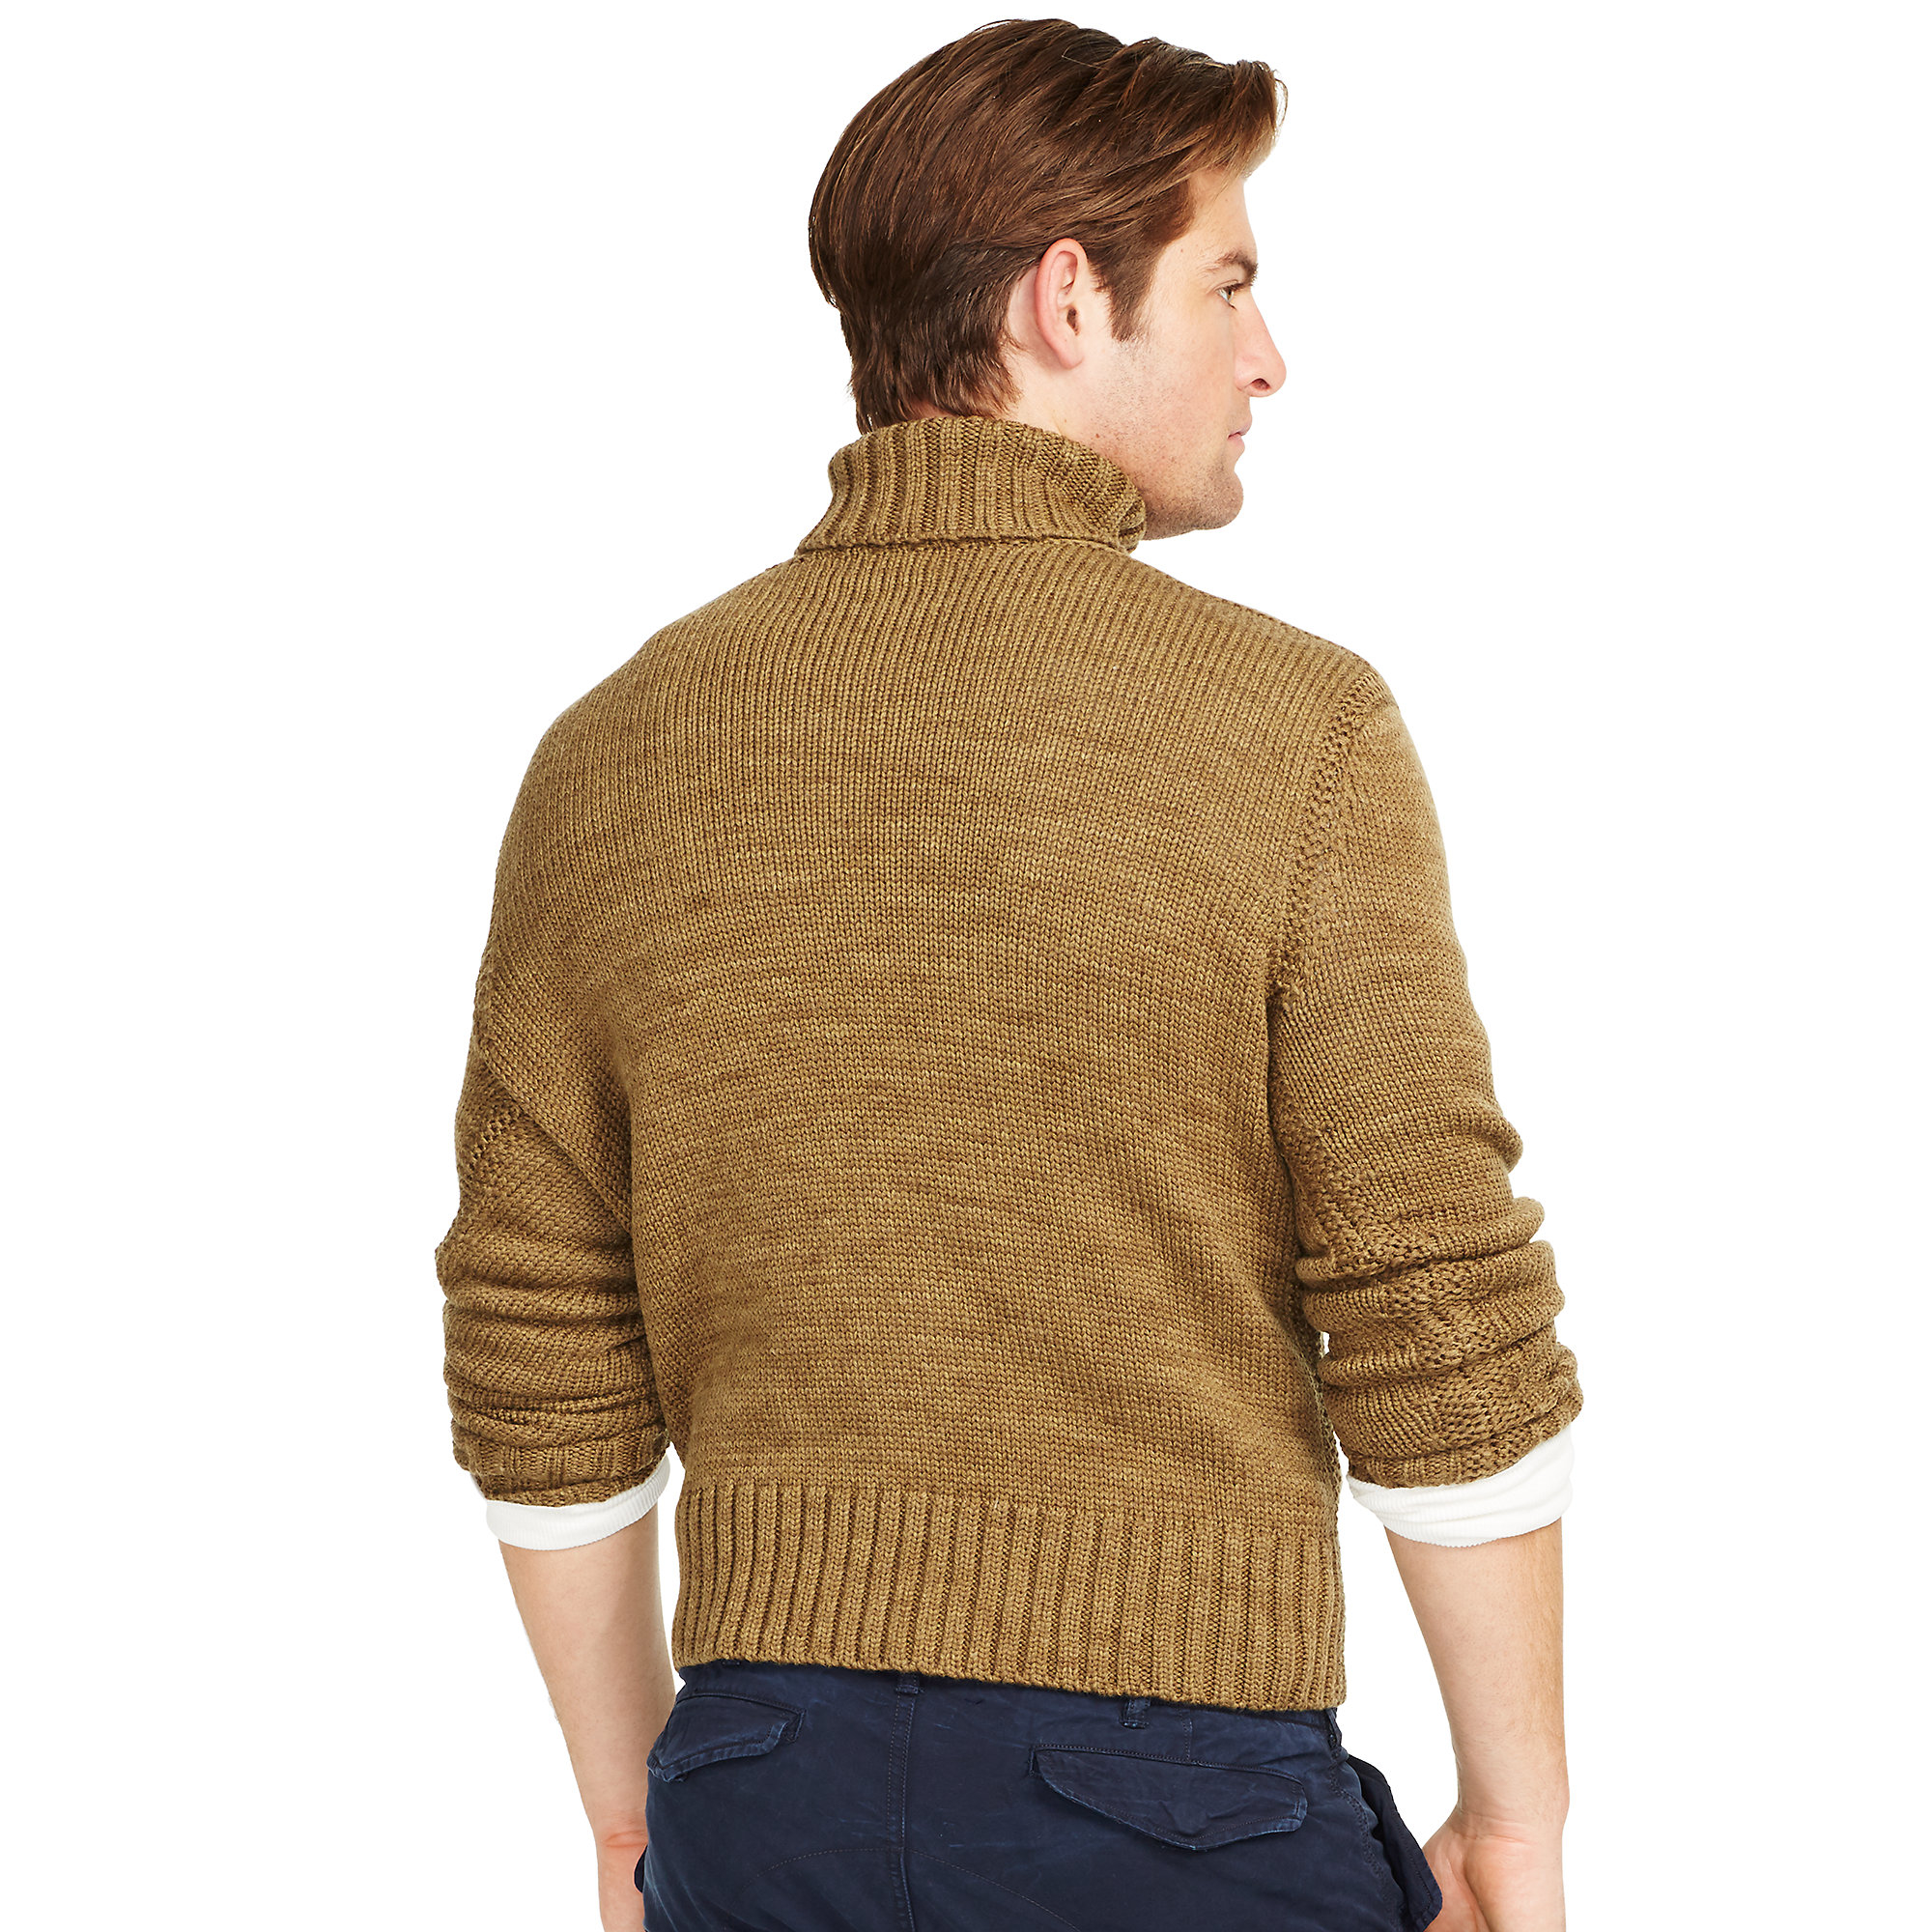 Lyst - Polo Ralph Lauren Merino Wool Turtleneck Sweater in Brown for Men